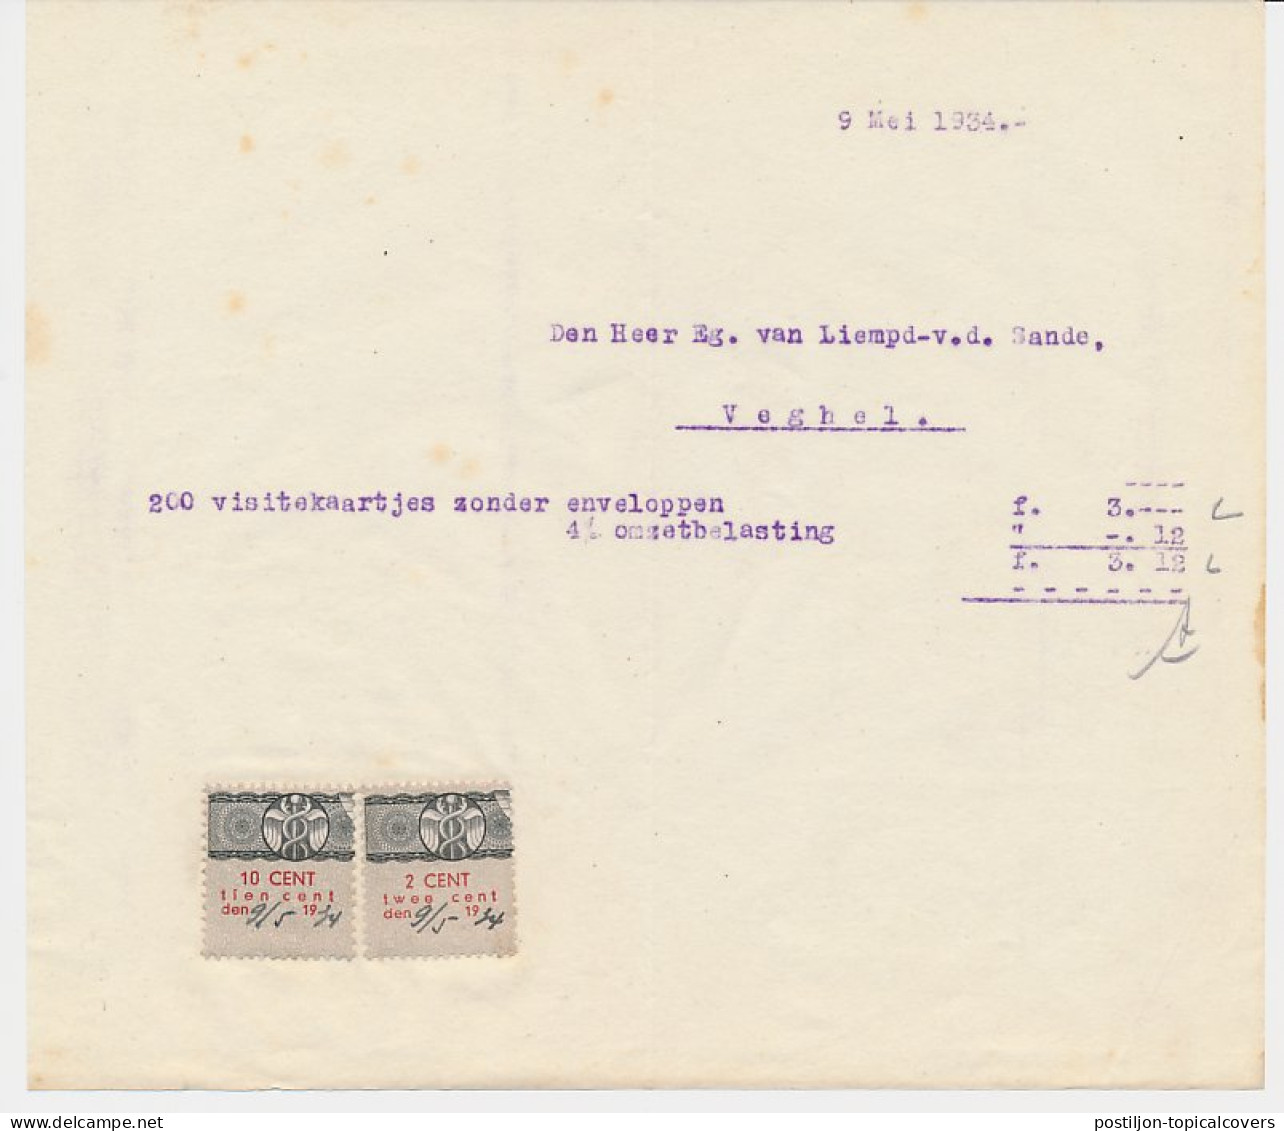 Omzetbelasting 2 / 10 CENT - Veghel 1934 - Revenue Stamps